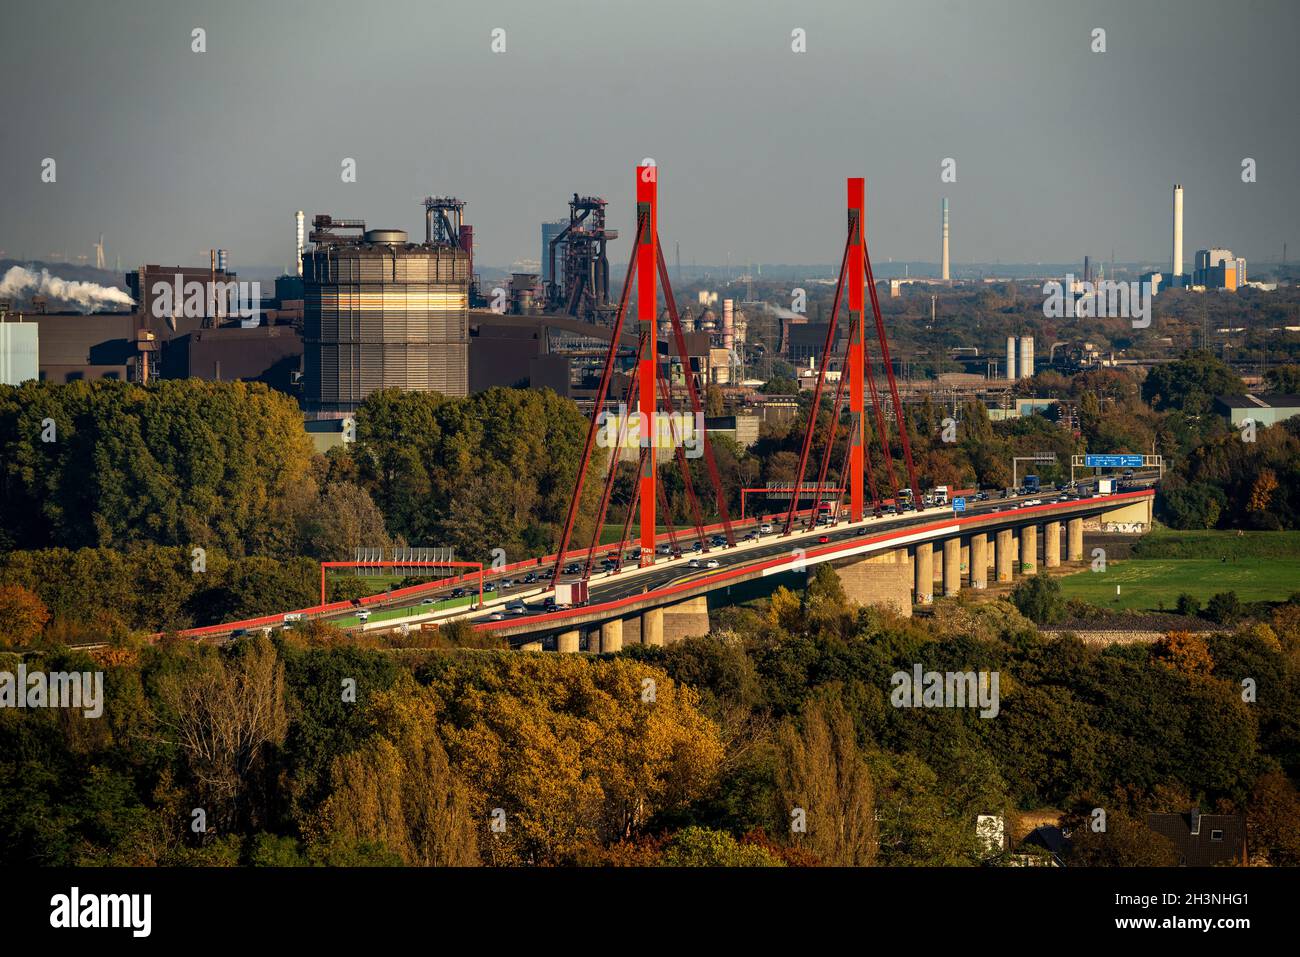 Autobahnbrücke der A42 über den Rhein bei Duisburg Beeckerwerth, thyssenkrupp Stahlwerk, Hochöfen, Duisburg, NRW, Deutschland Stockfoto